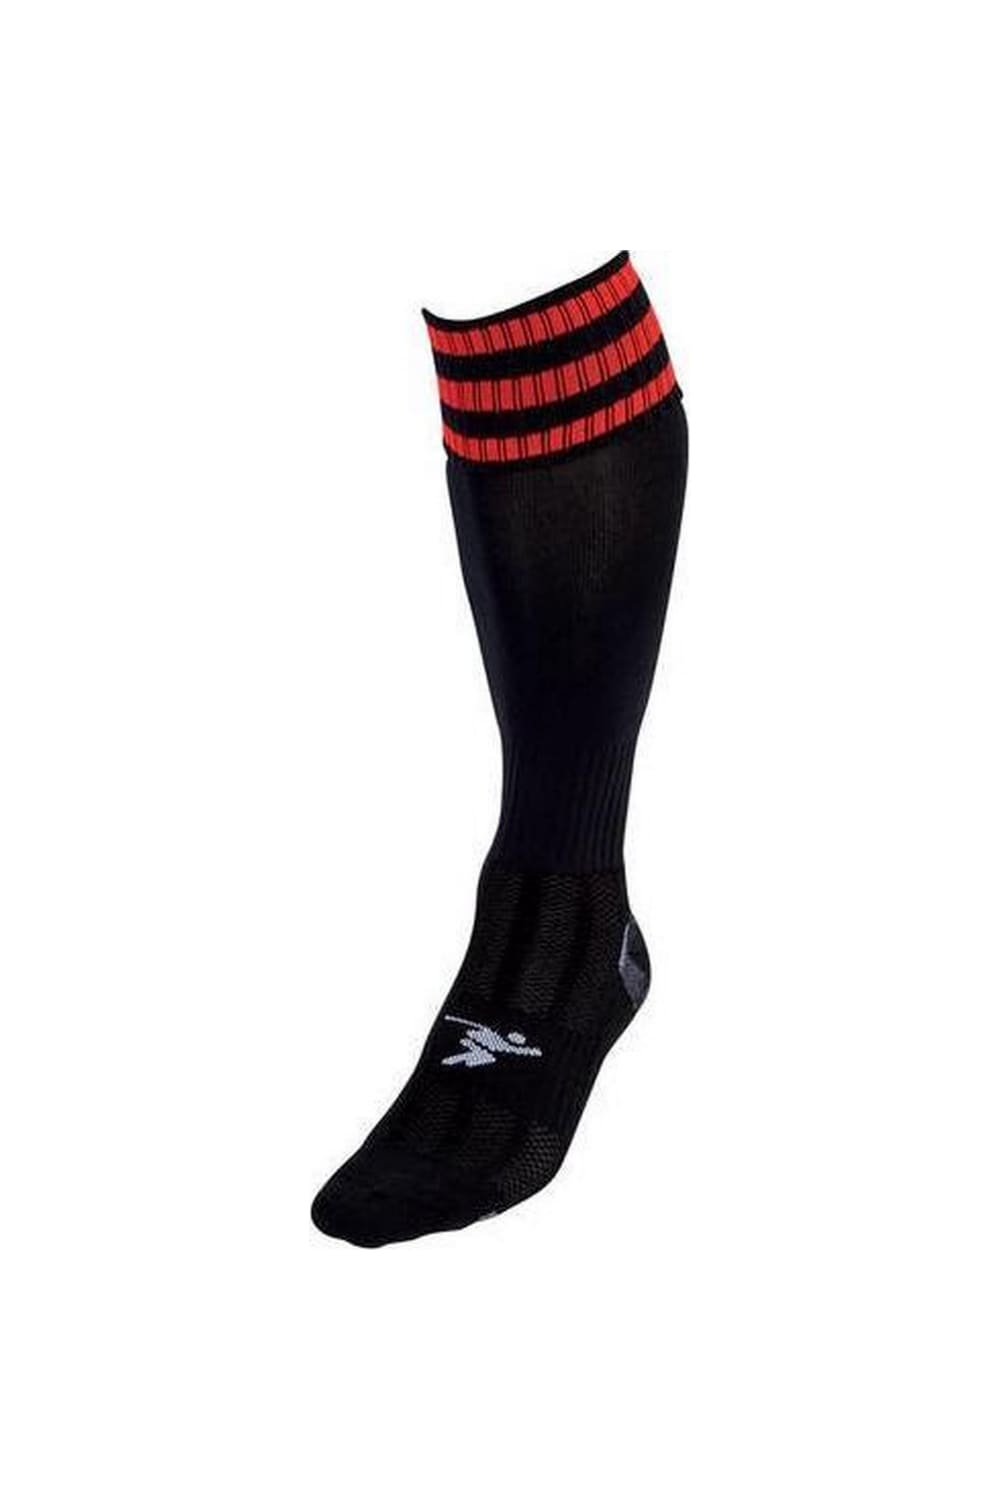 Precision Unisex Adult Pro Football Socks (Black/Tangerine)